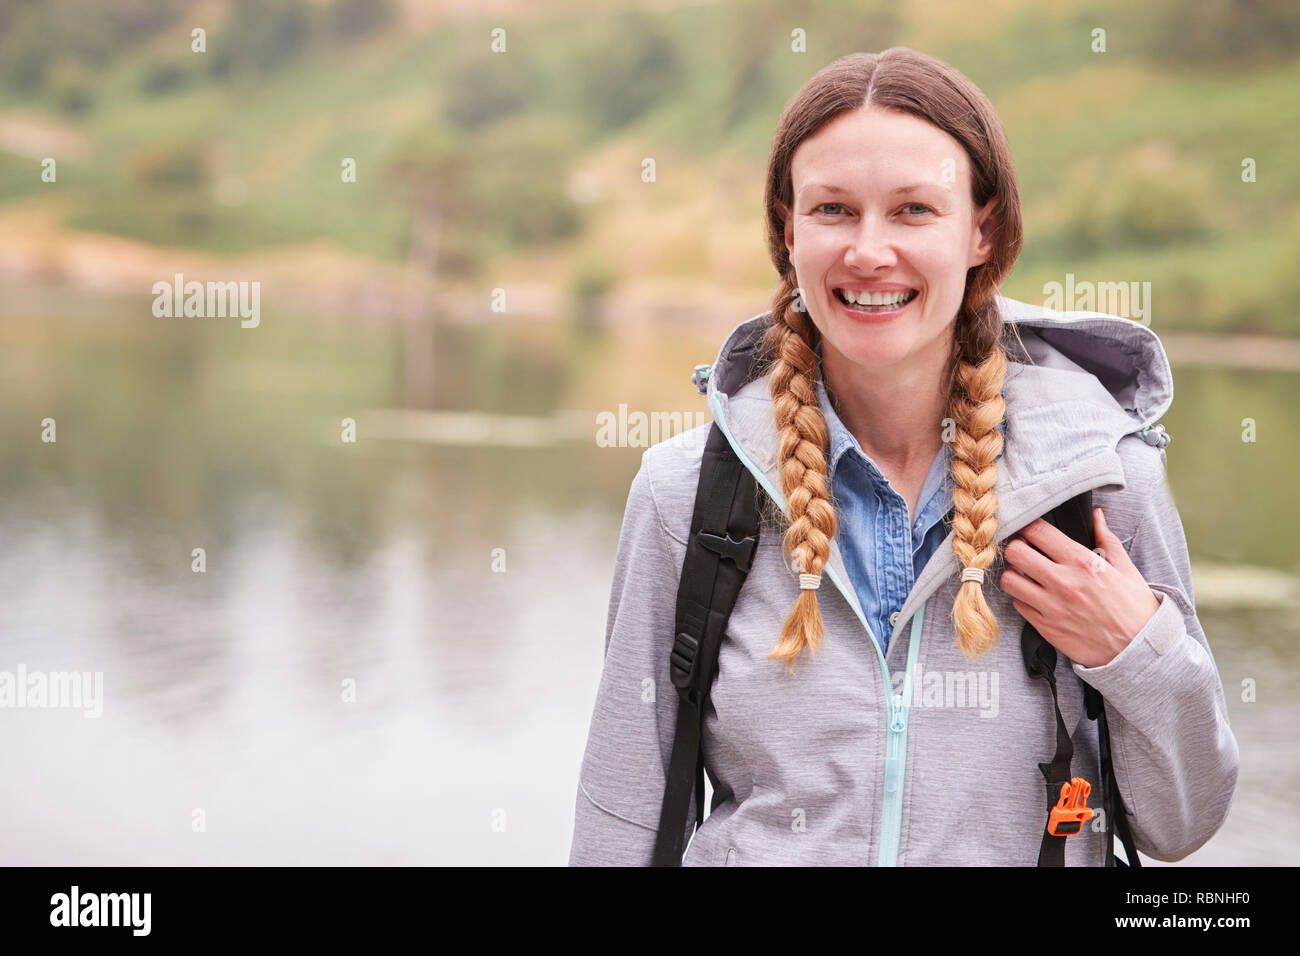 Jeune femme adulte sur un camping appartement de standing by a lake laughing, portrait, Lake District, UK Banque D'Images